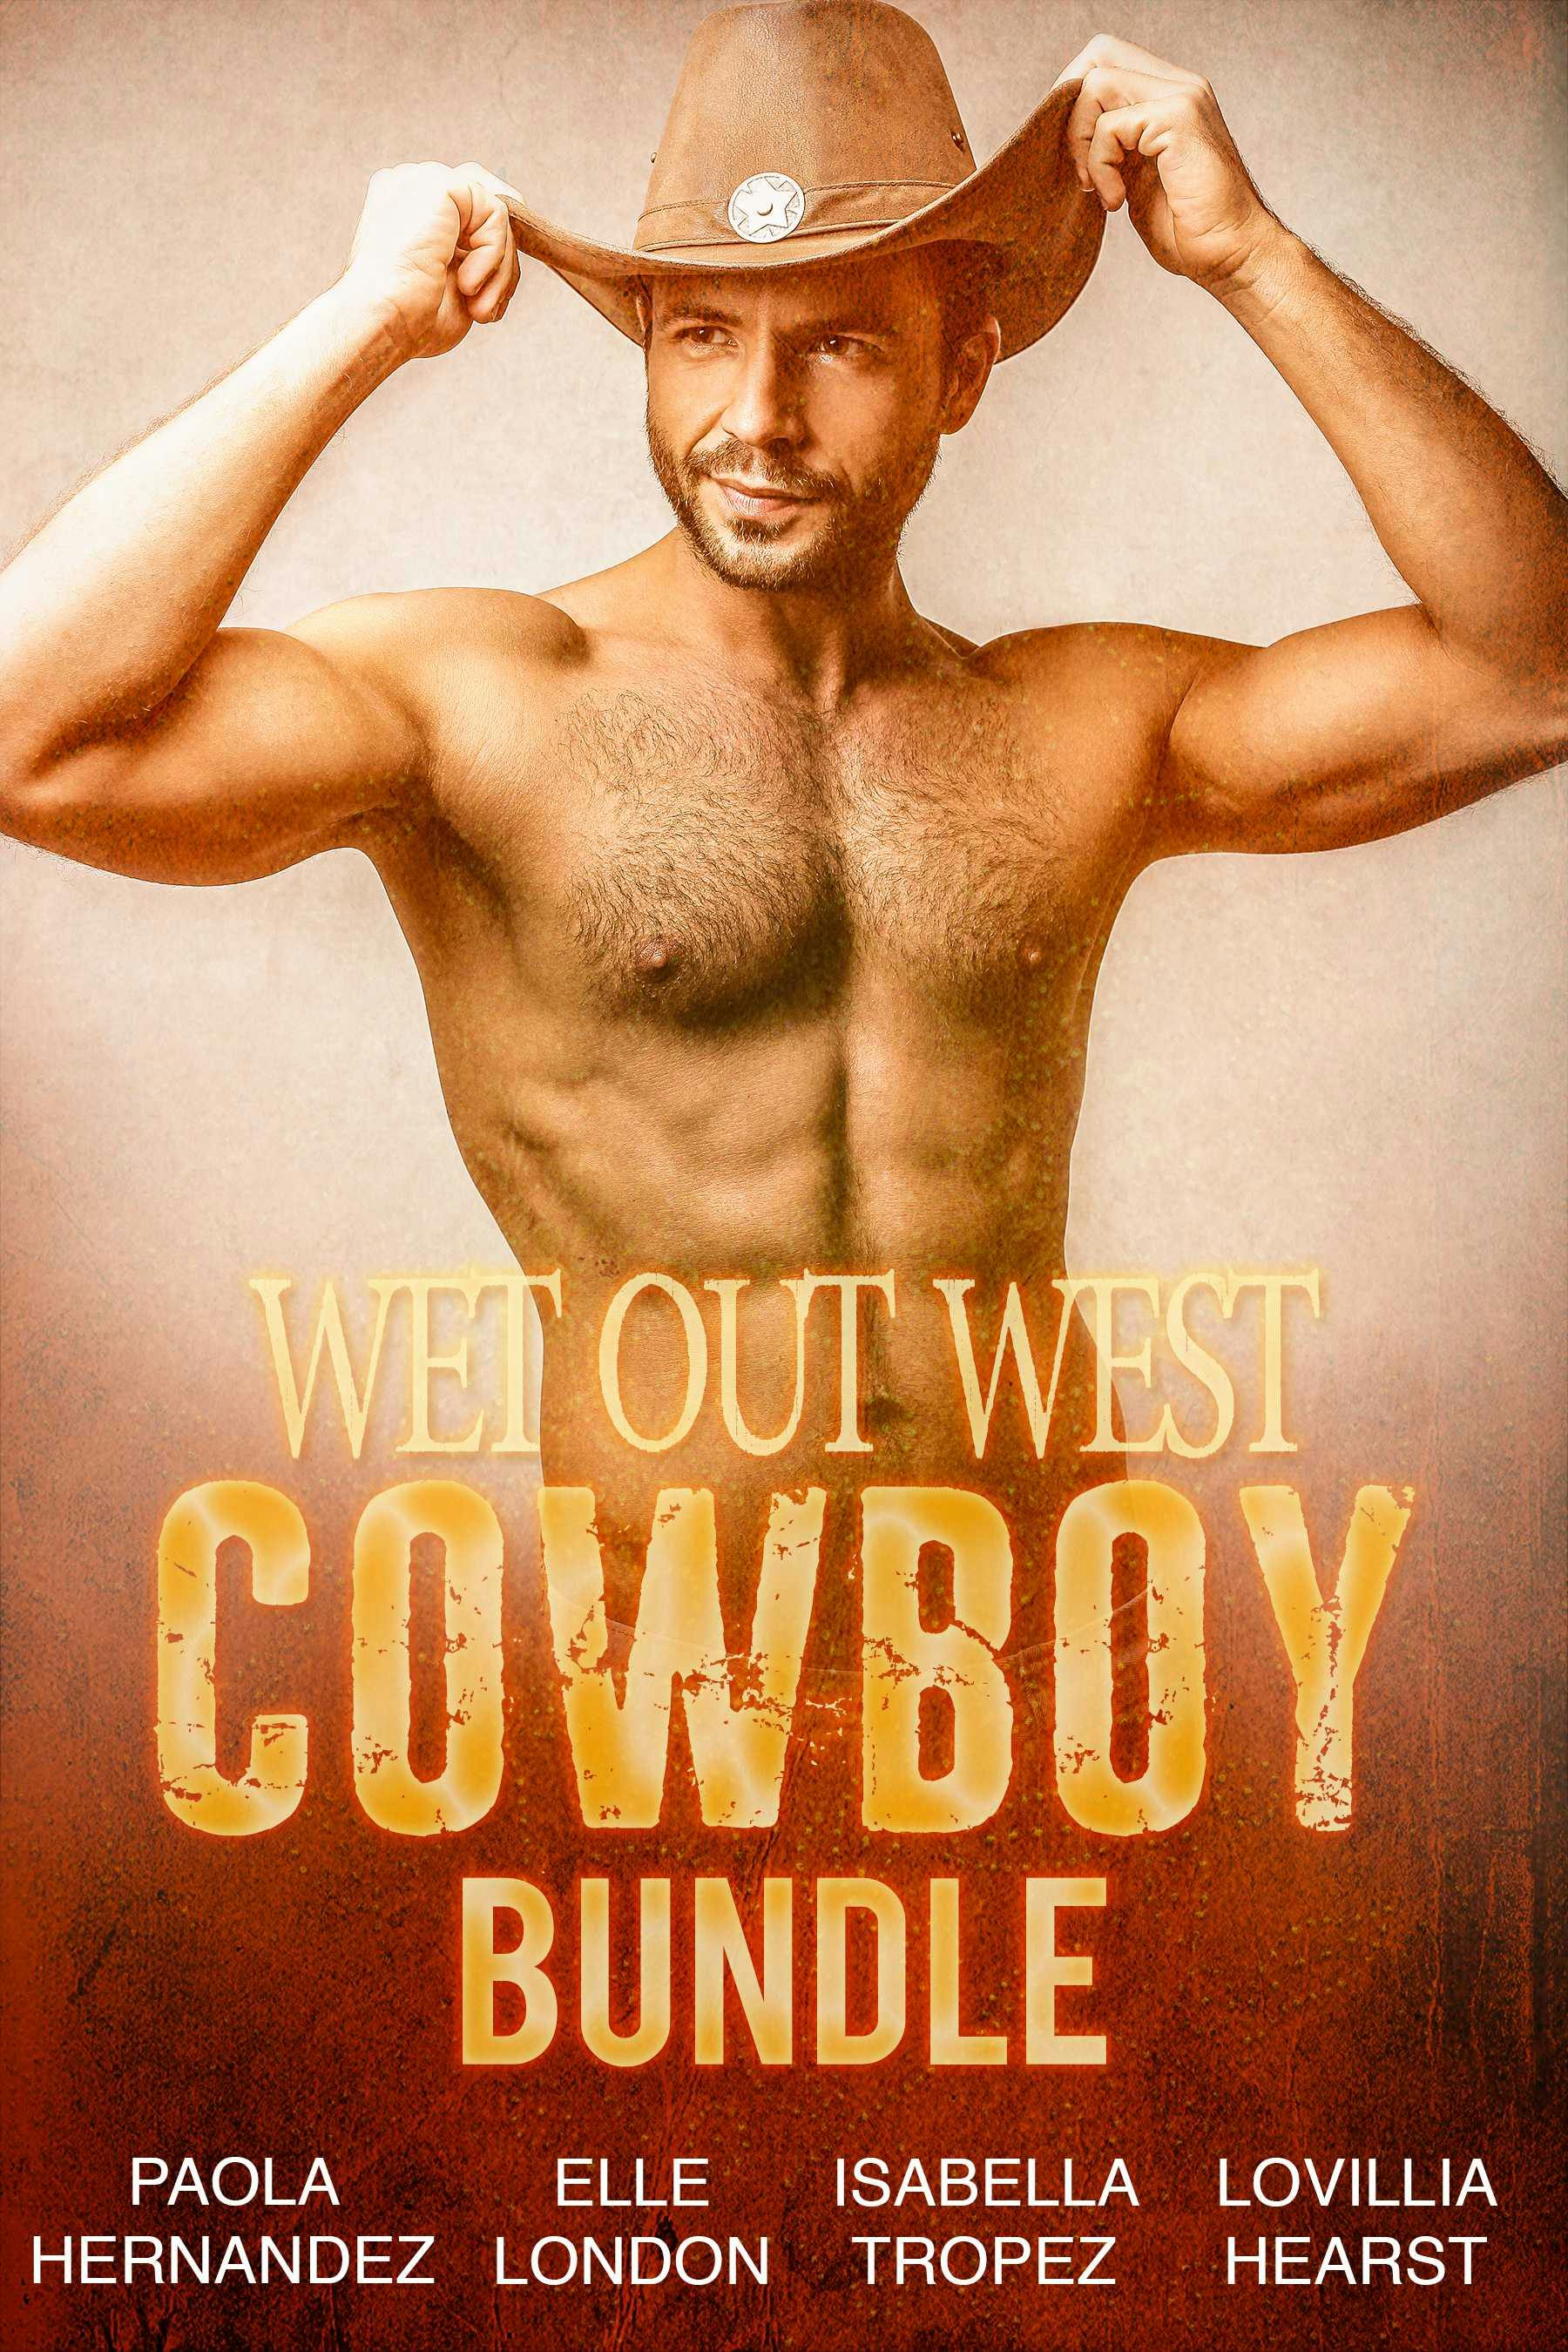 Wet Out West Cowboy Bundle - Elle London, Isabella Tropez, Lovillia Hearst, Paola Hernandez